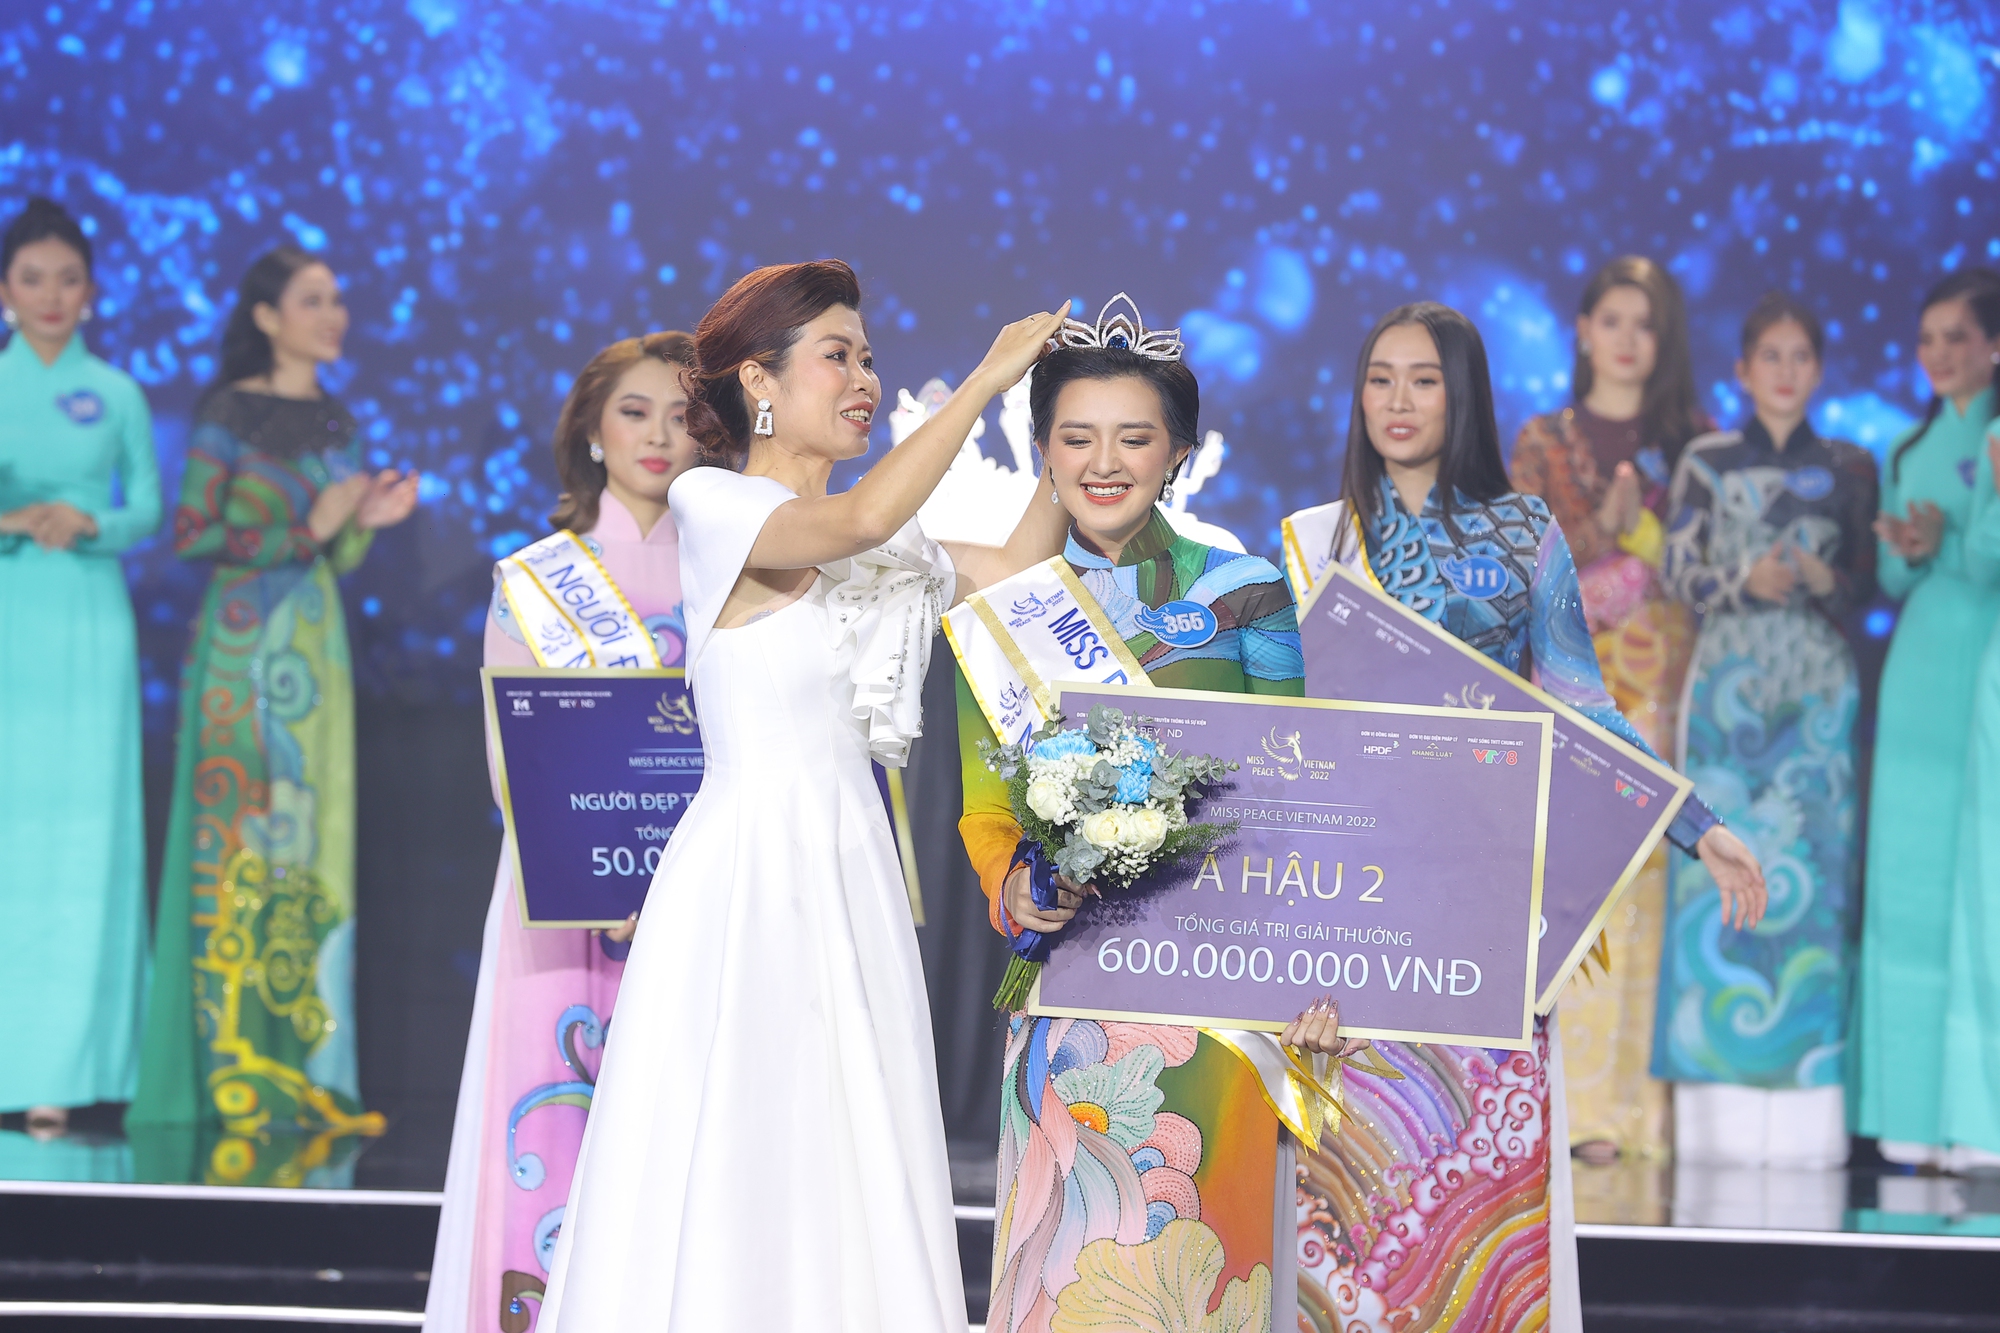 Trần Thị Ban Mai – thông dịch viên sinh năm 2000 đăng quang Miss Peace Vietnam 2022 - Ảnh 3.